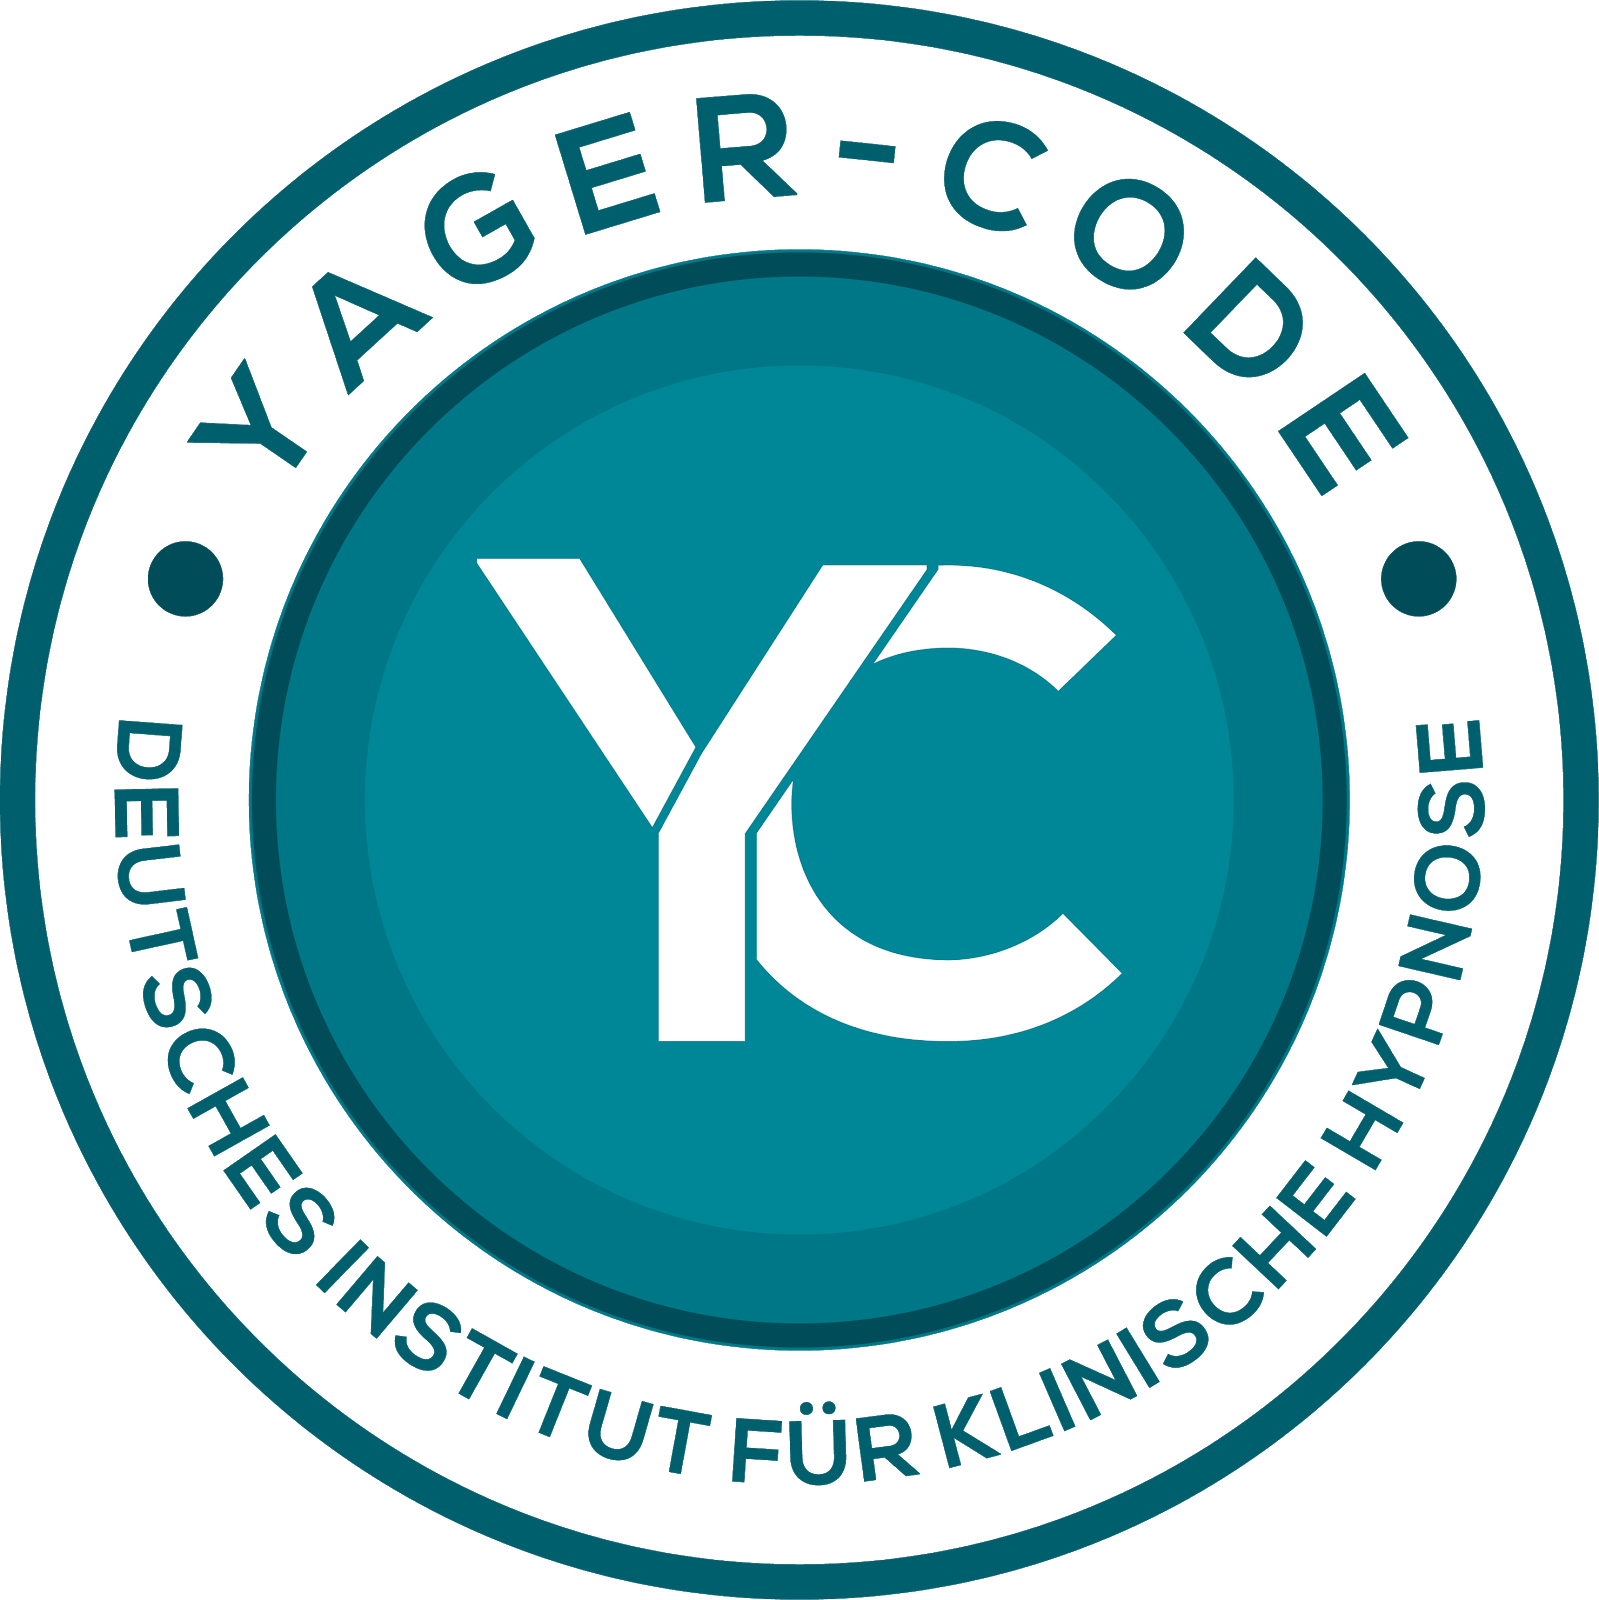 Yager-Code-Gütesiegel des Deutschen Instituts für Klinische Hypnose